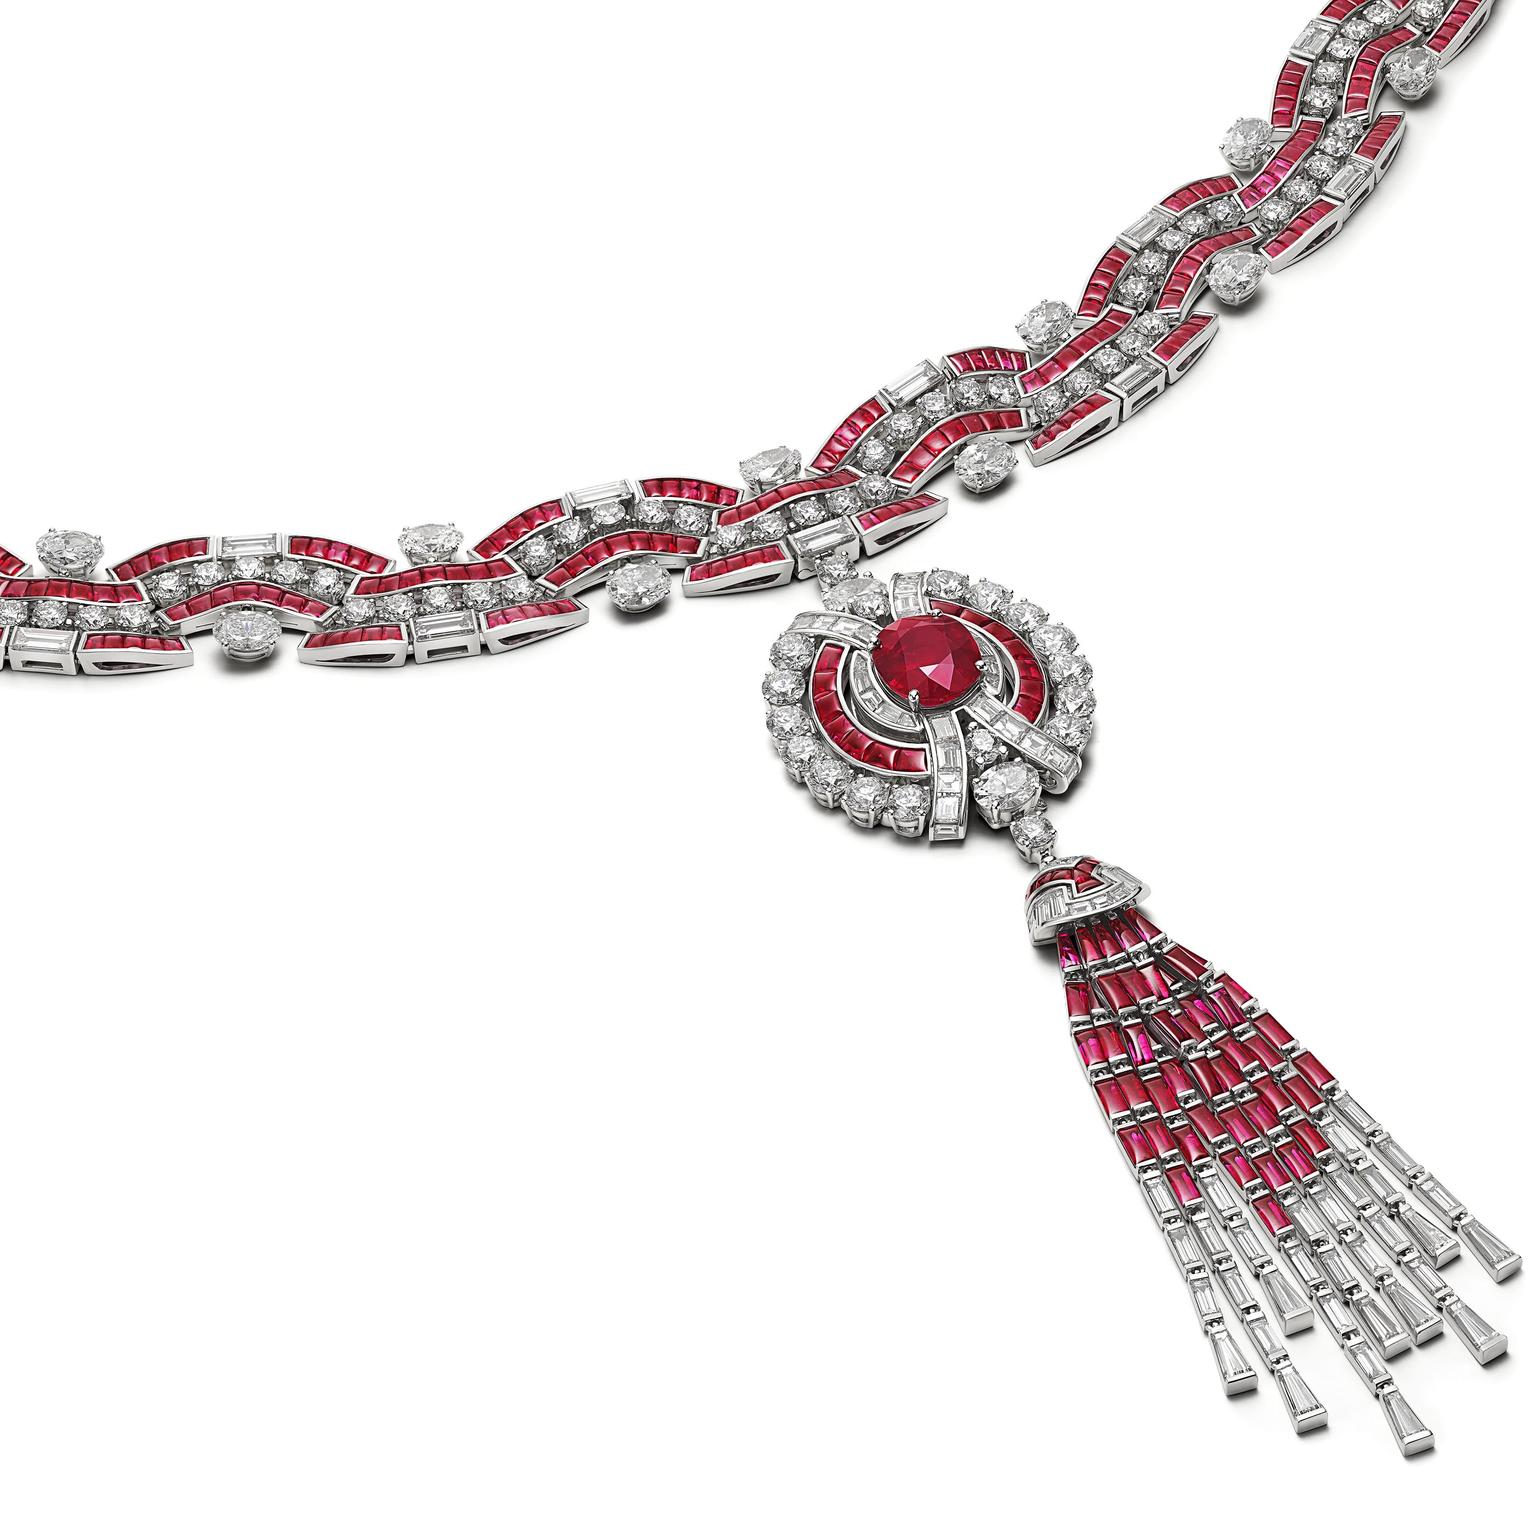  Ruby Metamorphosis necklace by Bulgari